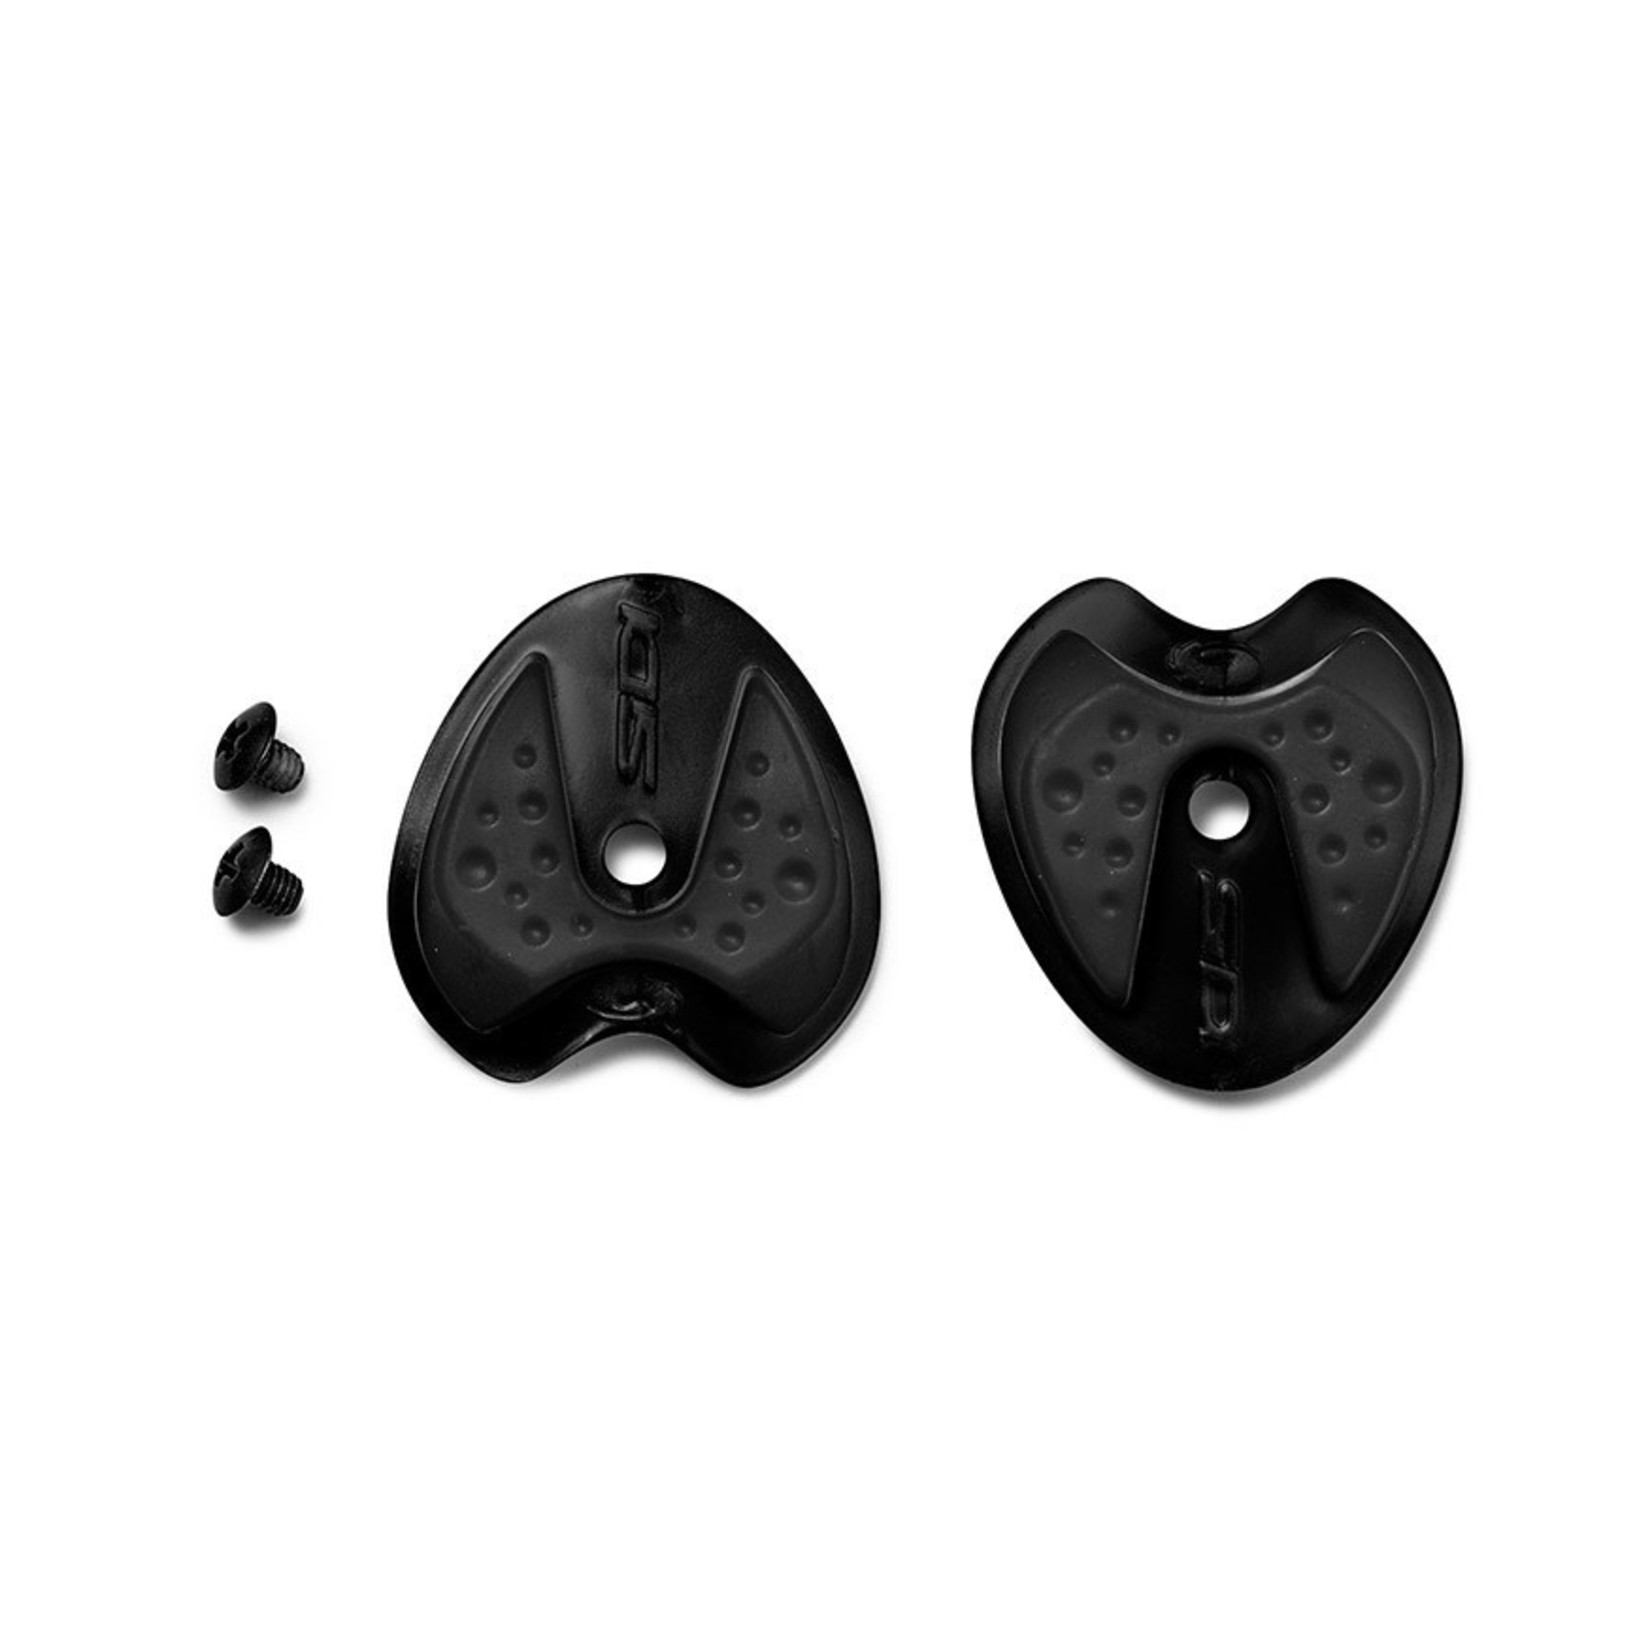 Sidi sidi Millenium 3 replacement rubber heel (black) - Pair